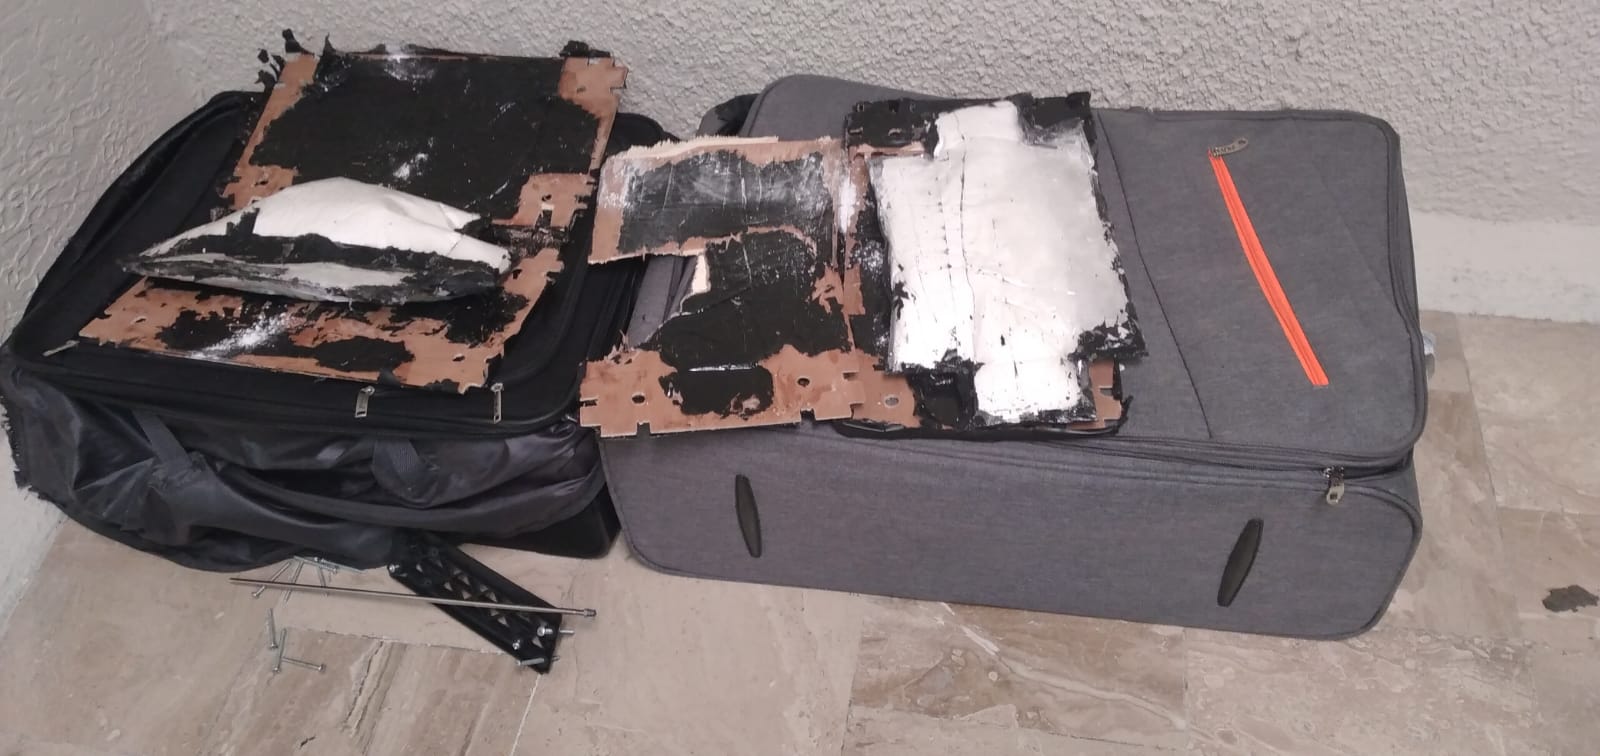 DNCD apresa dos con presunta cocaína en aeropuerto Punta Cana